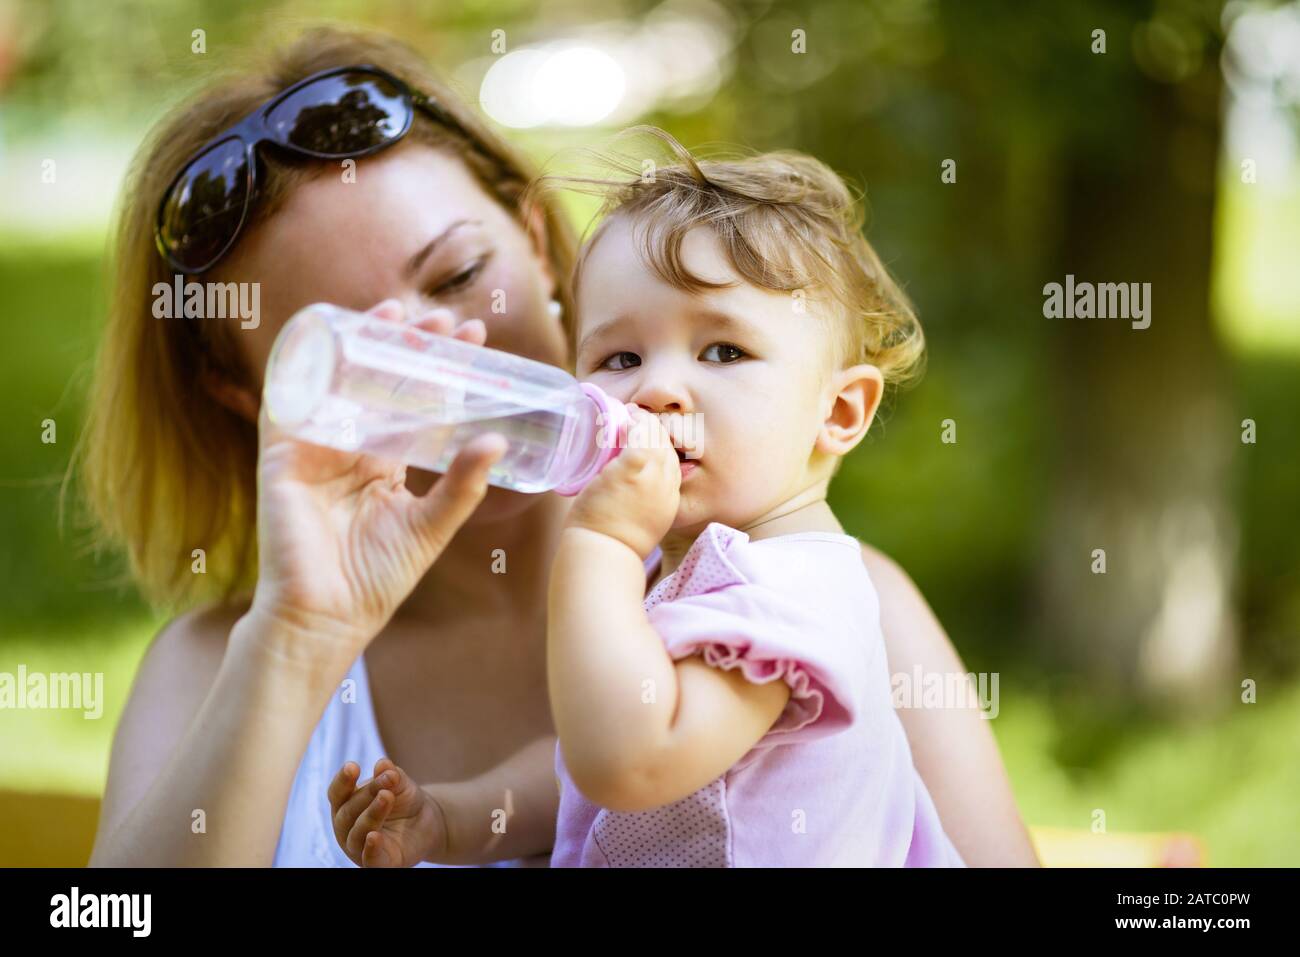 La mère donne à sa fille de bébé de boire de l'eau à partir d'une bouteille dans un parc. Enfant extérieur d'un an. Banque D'Images